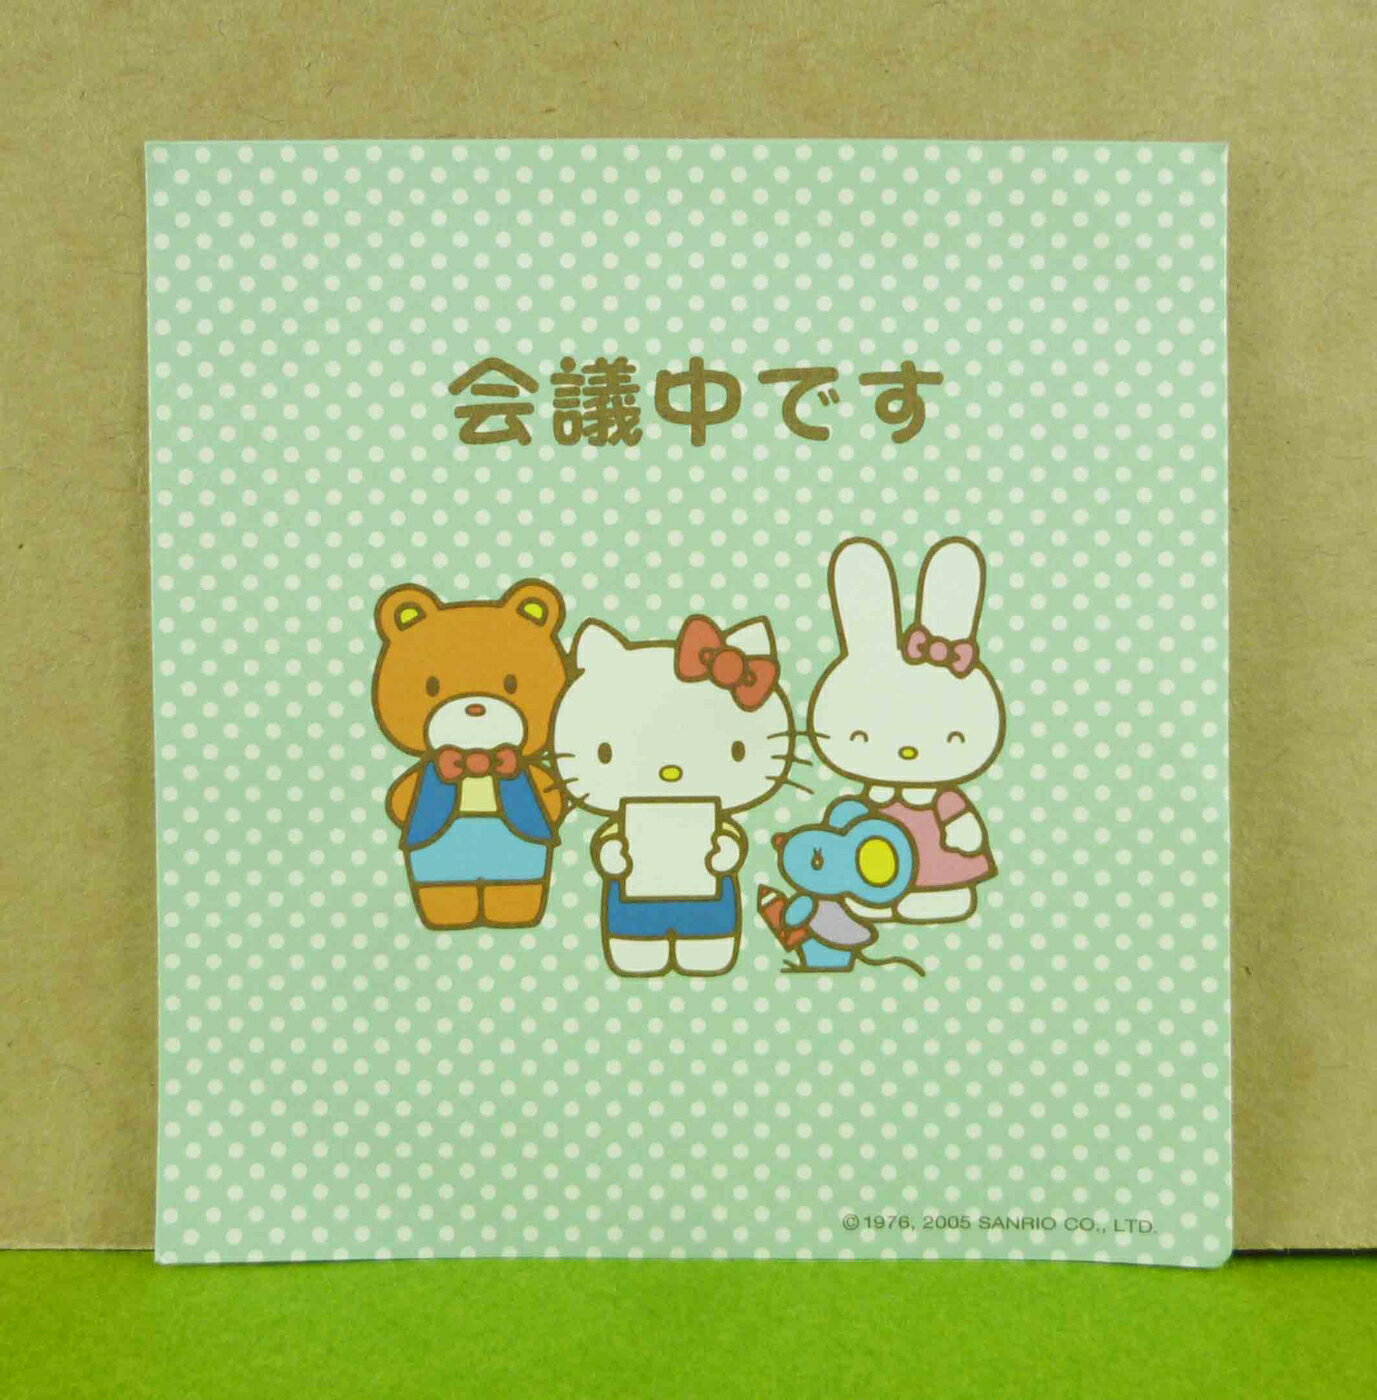 【震撼精品百貨】Hello Kitty 凱蒂貓 造型卡片-綠會議(線條) 震撼日式精品百貨